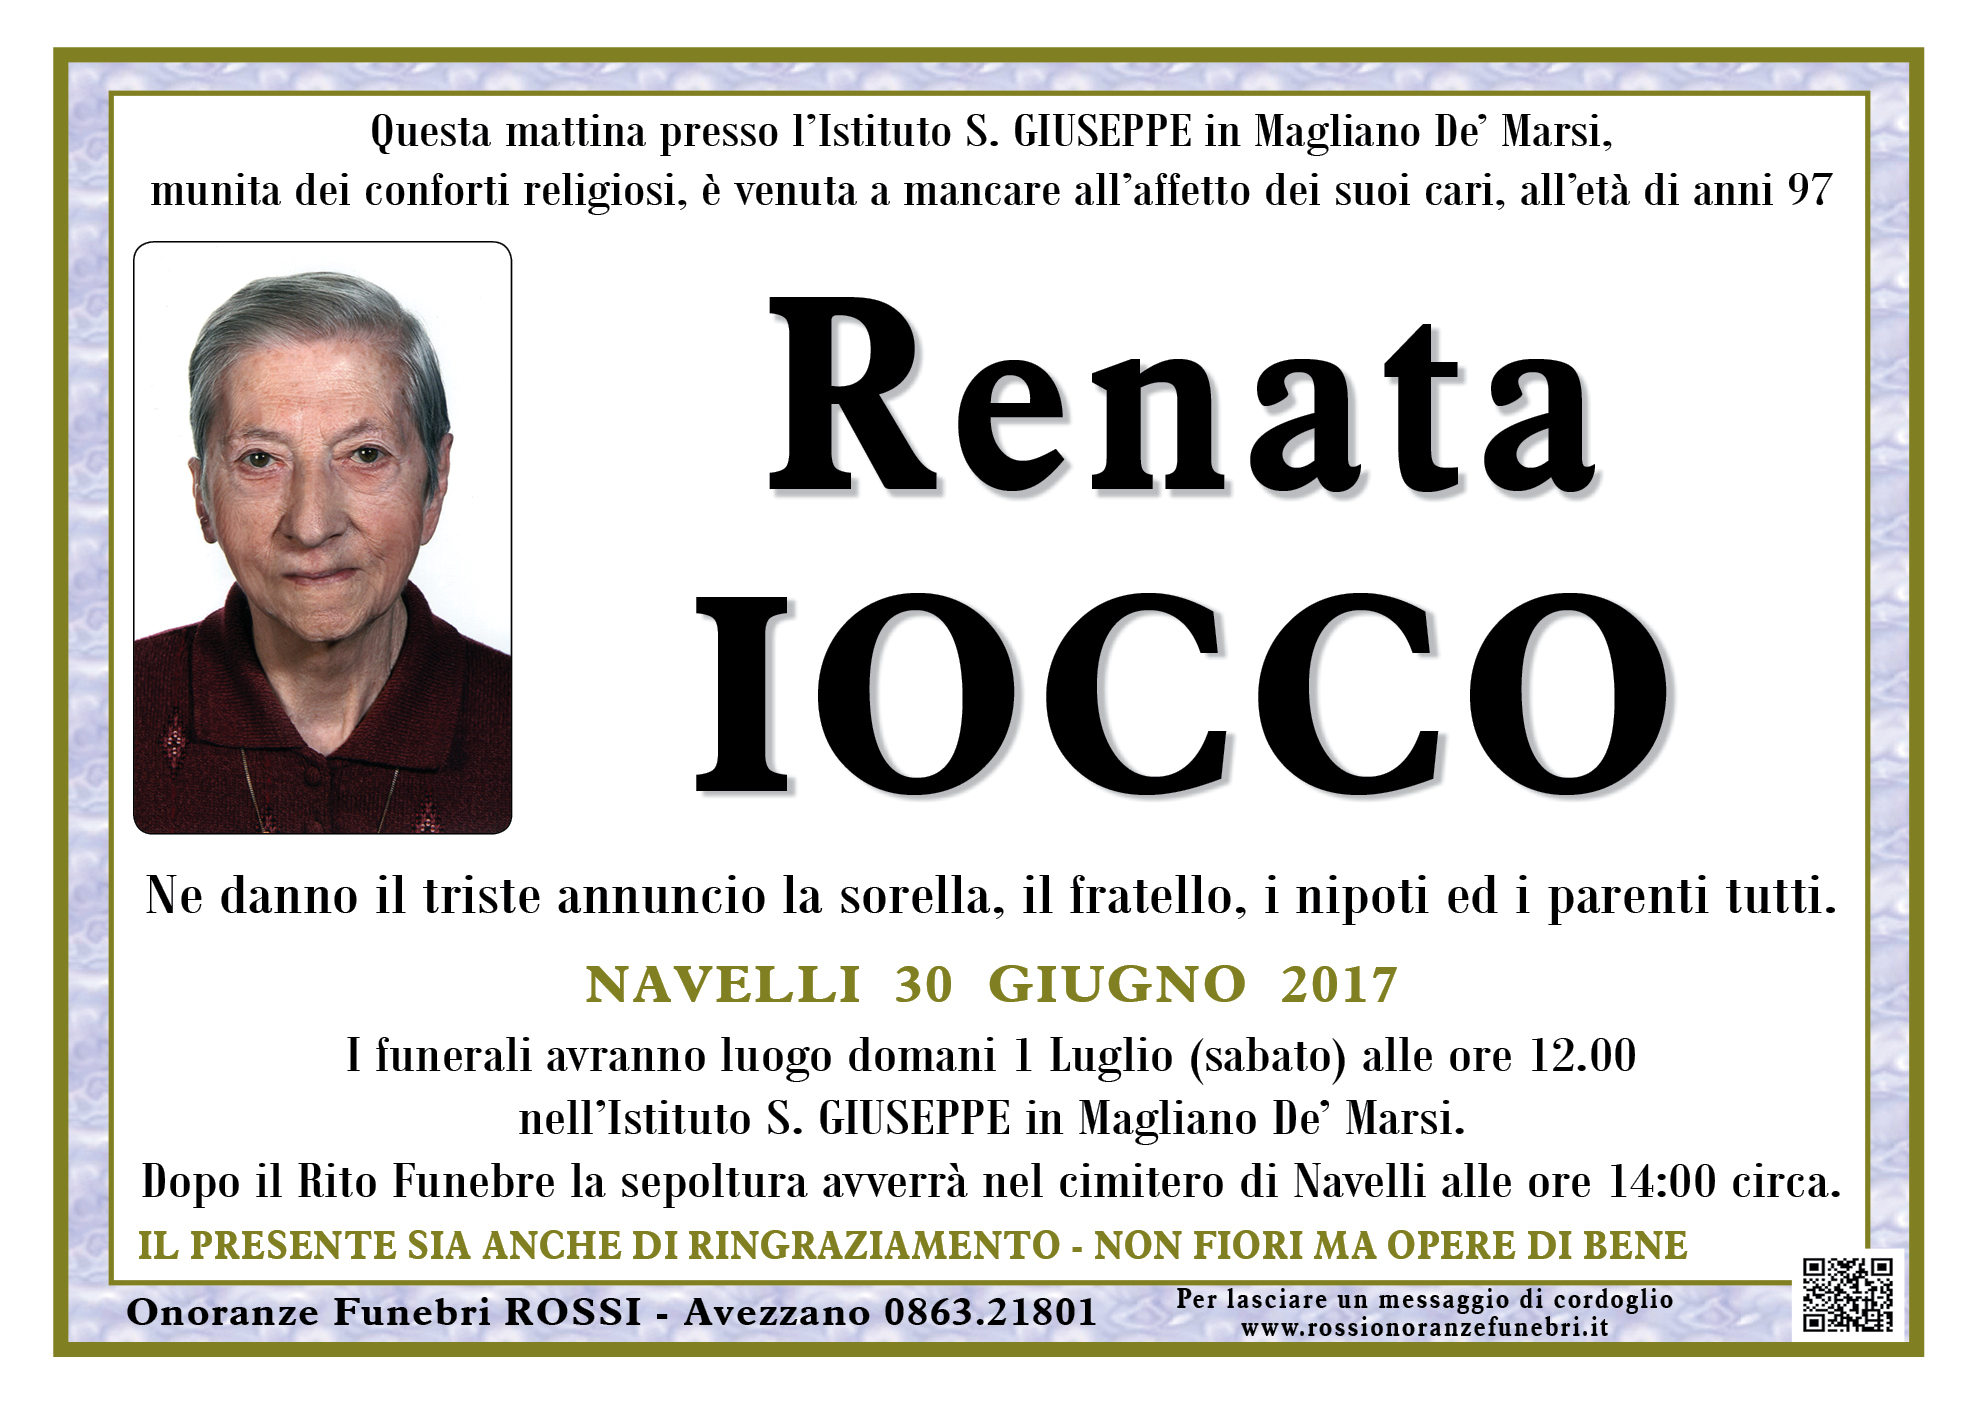 Renata Iocco